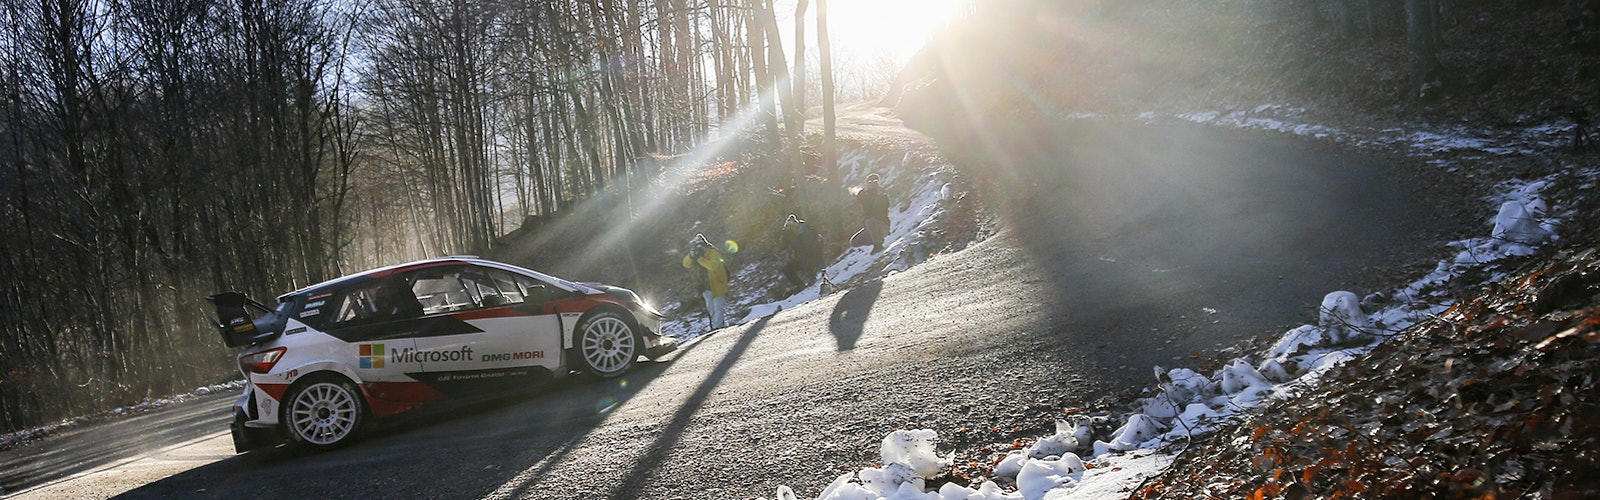 Sebastien Ogier Toyota WRC testing 2020